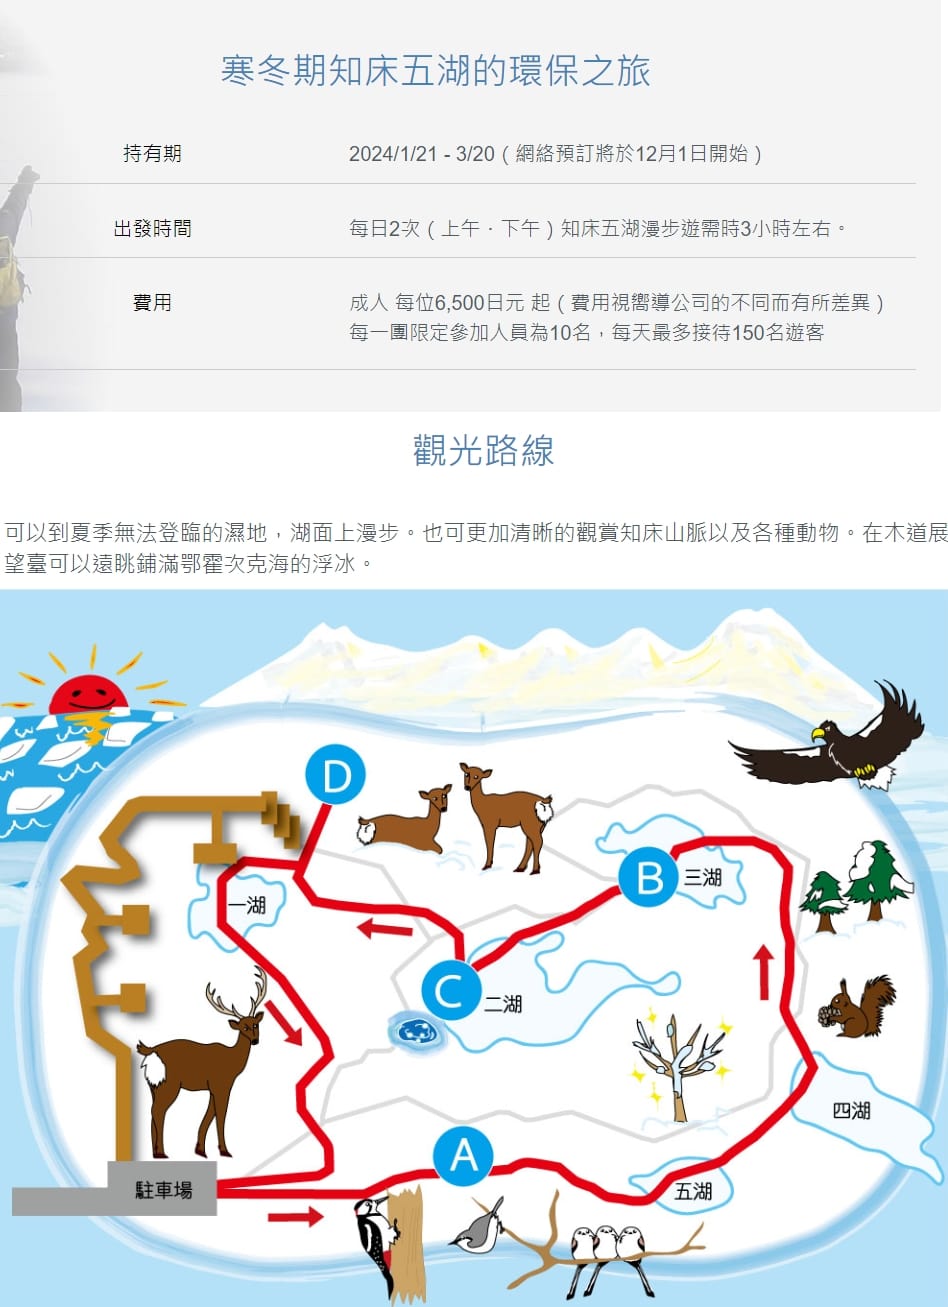 冬天北海道冰祭點燈活動資訊時間整理、景點推薦、一日遊行程